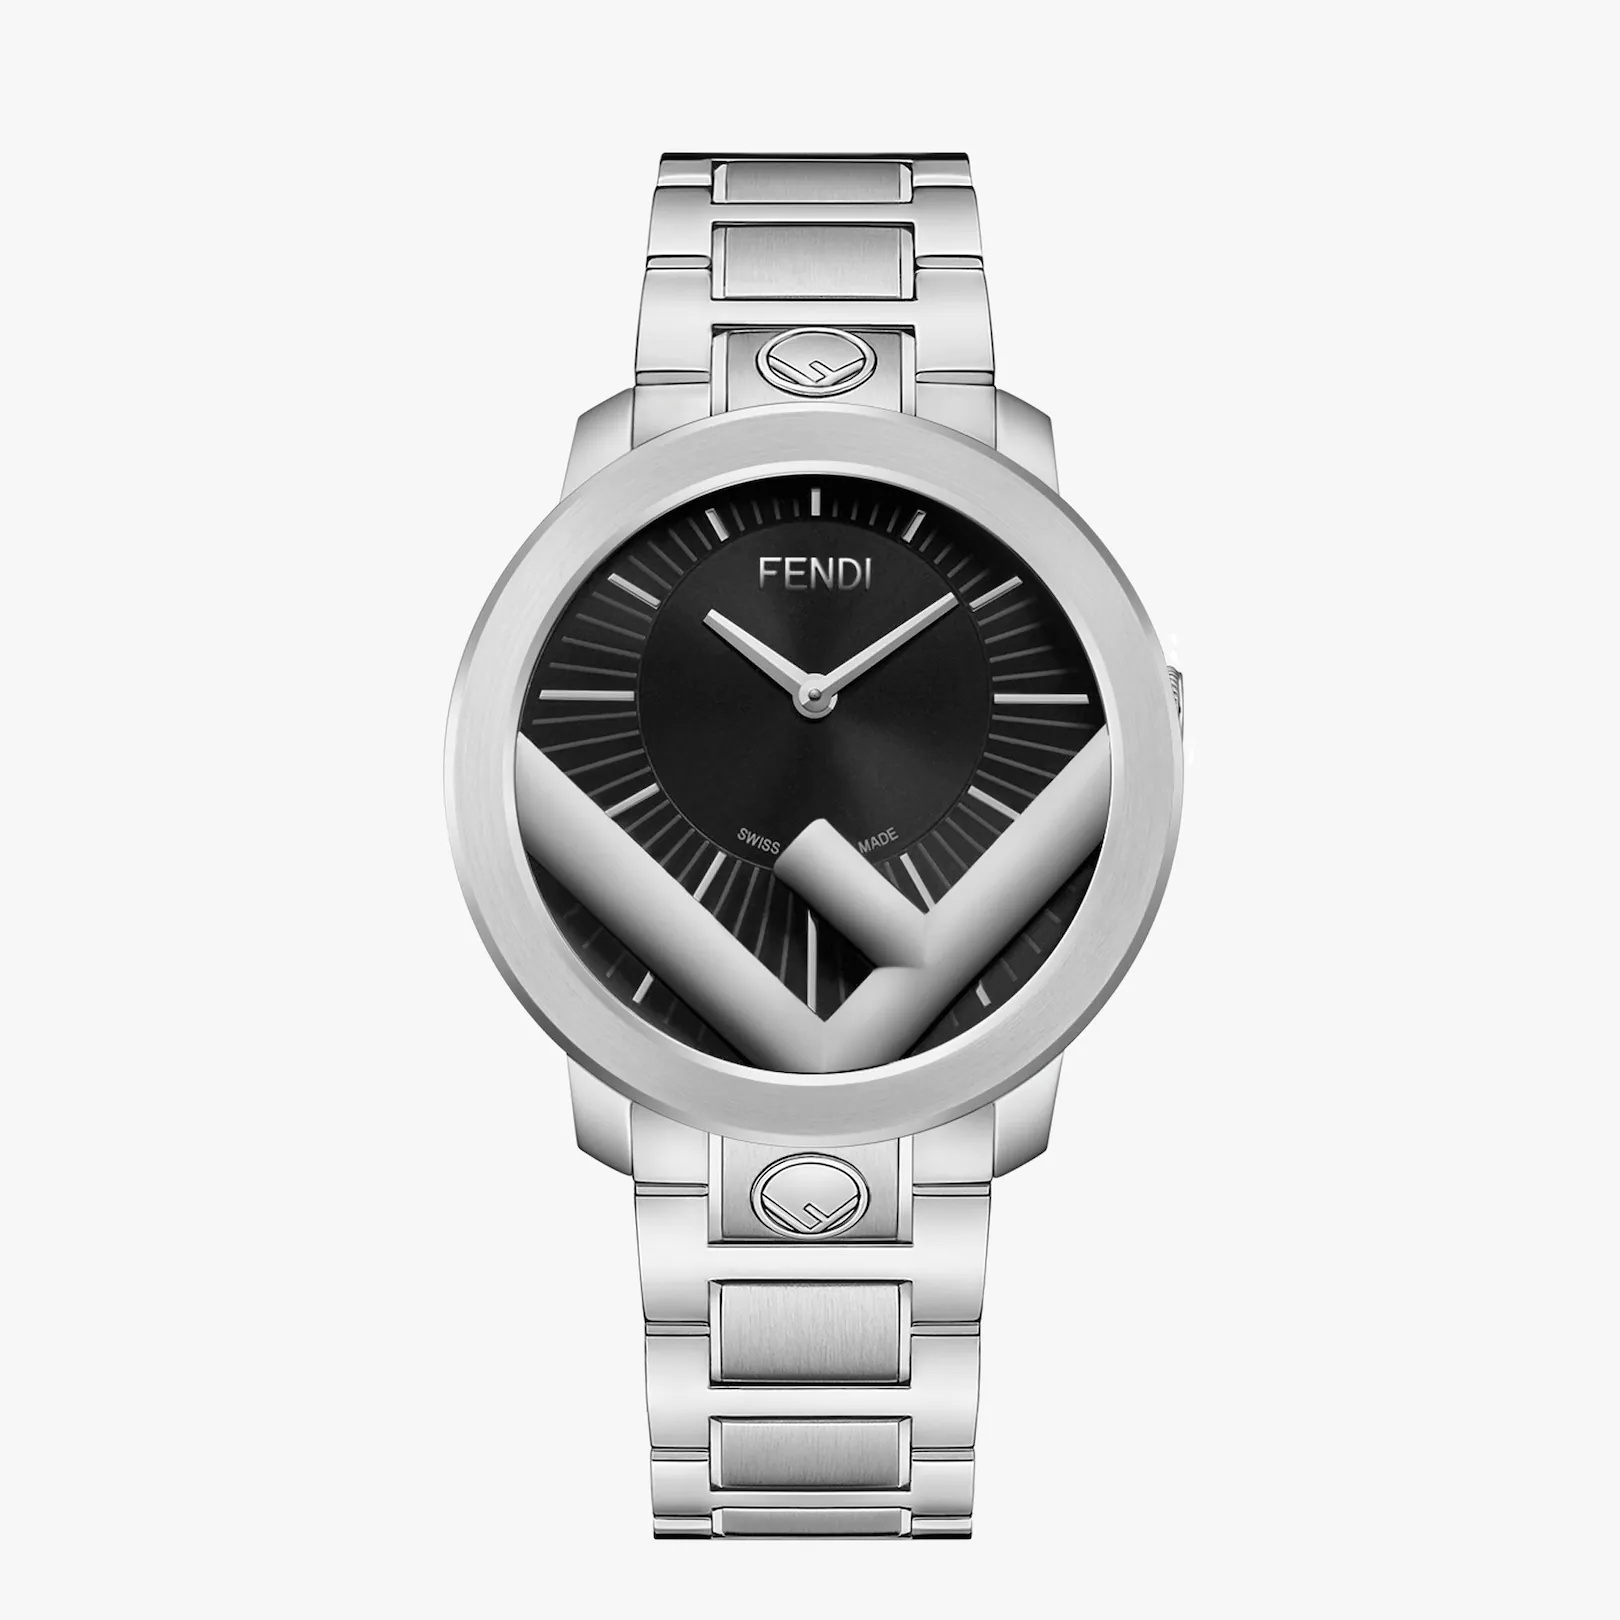 41 mm (1.6 inch) - Watch with F is Fendi logo - 1